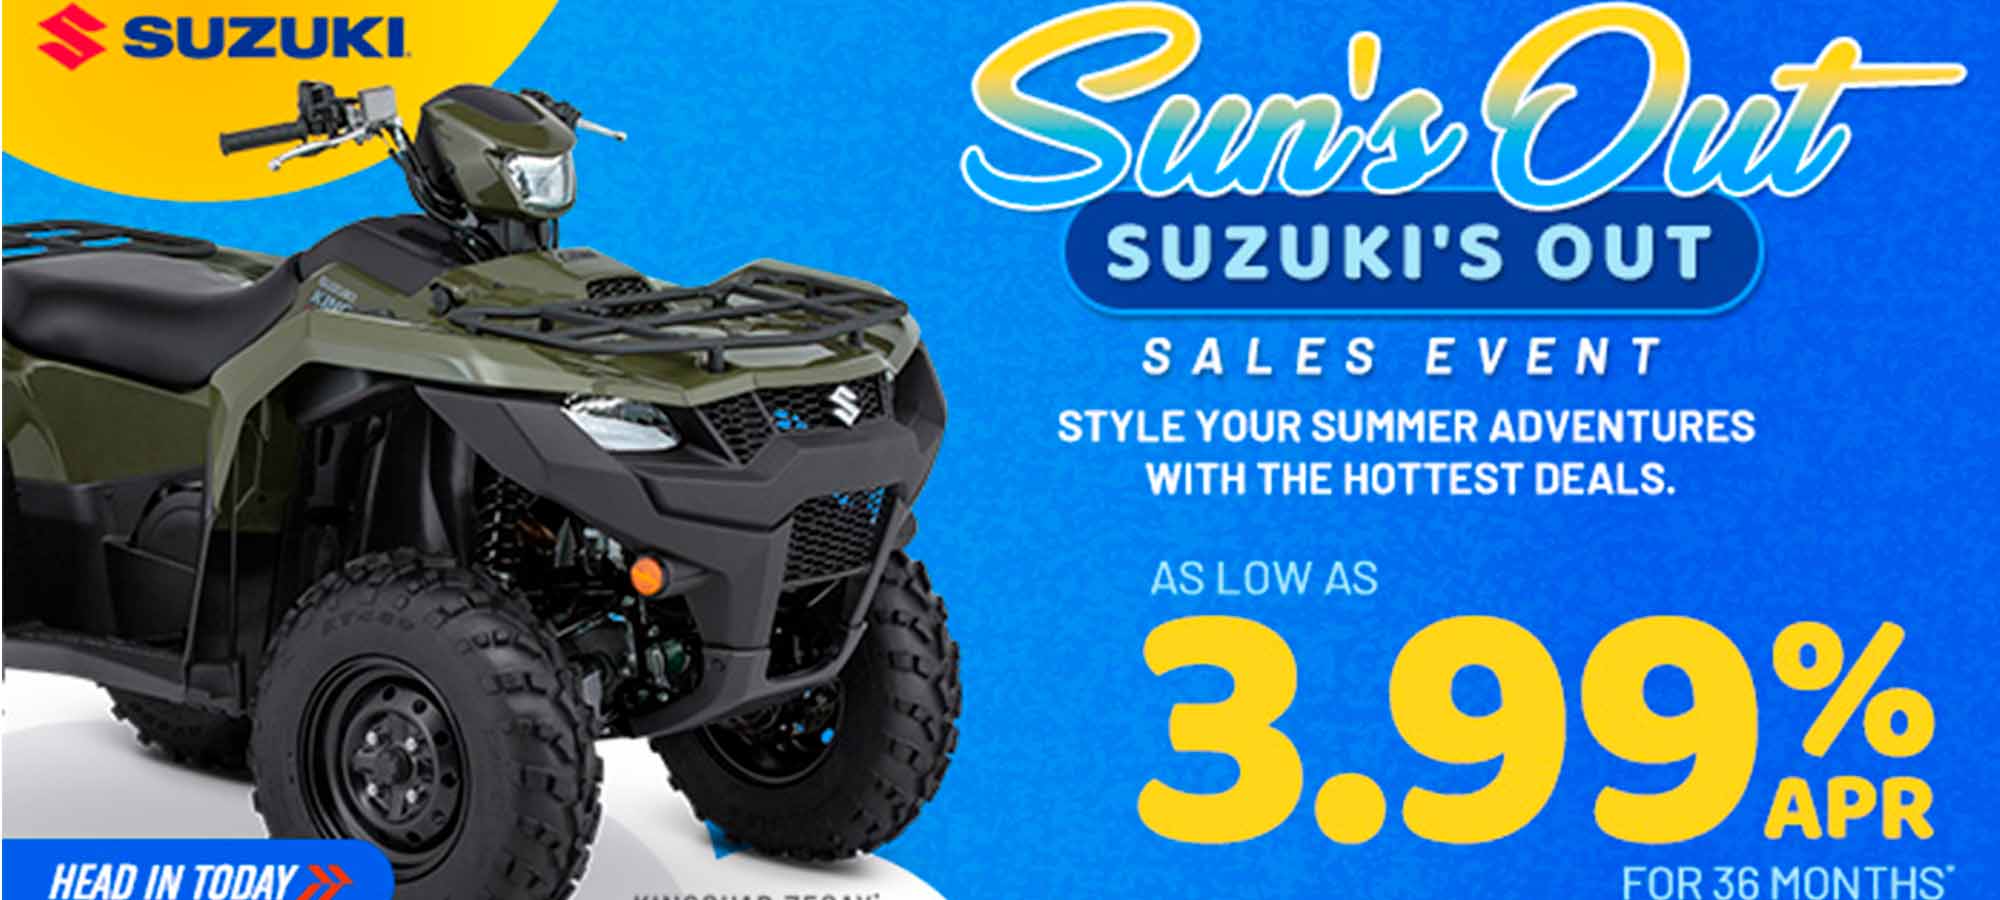 Suzuki US - Sun's Out Suzuki's Out Sales Event at Clawson Motorsports